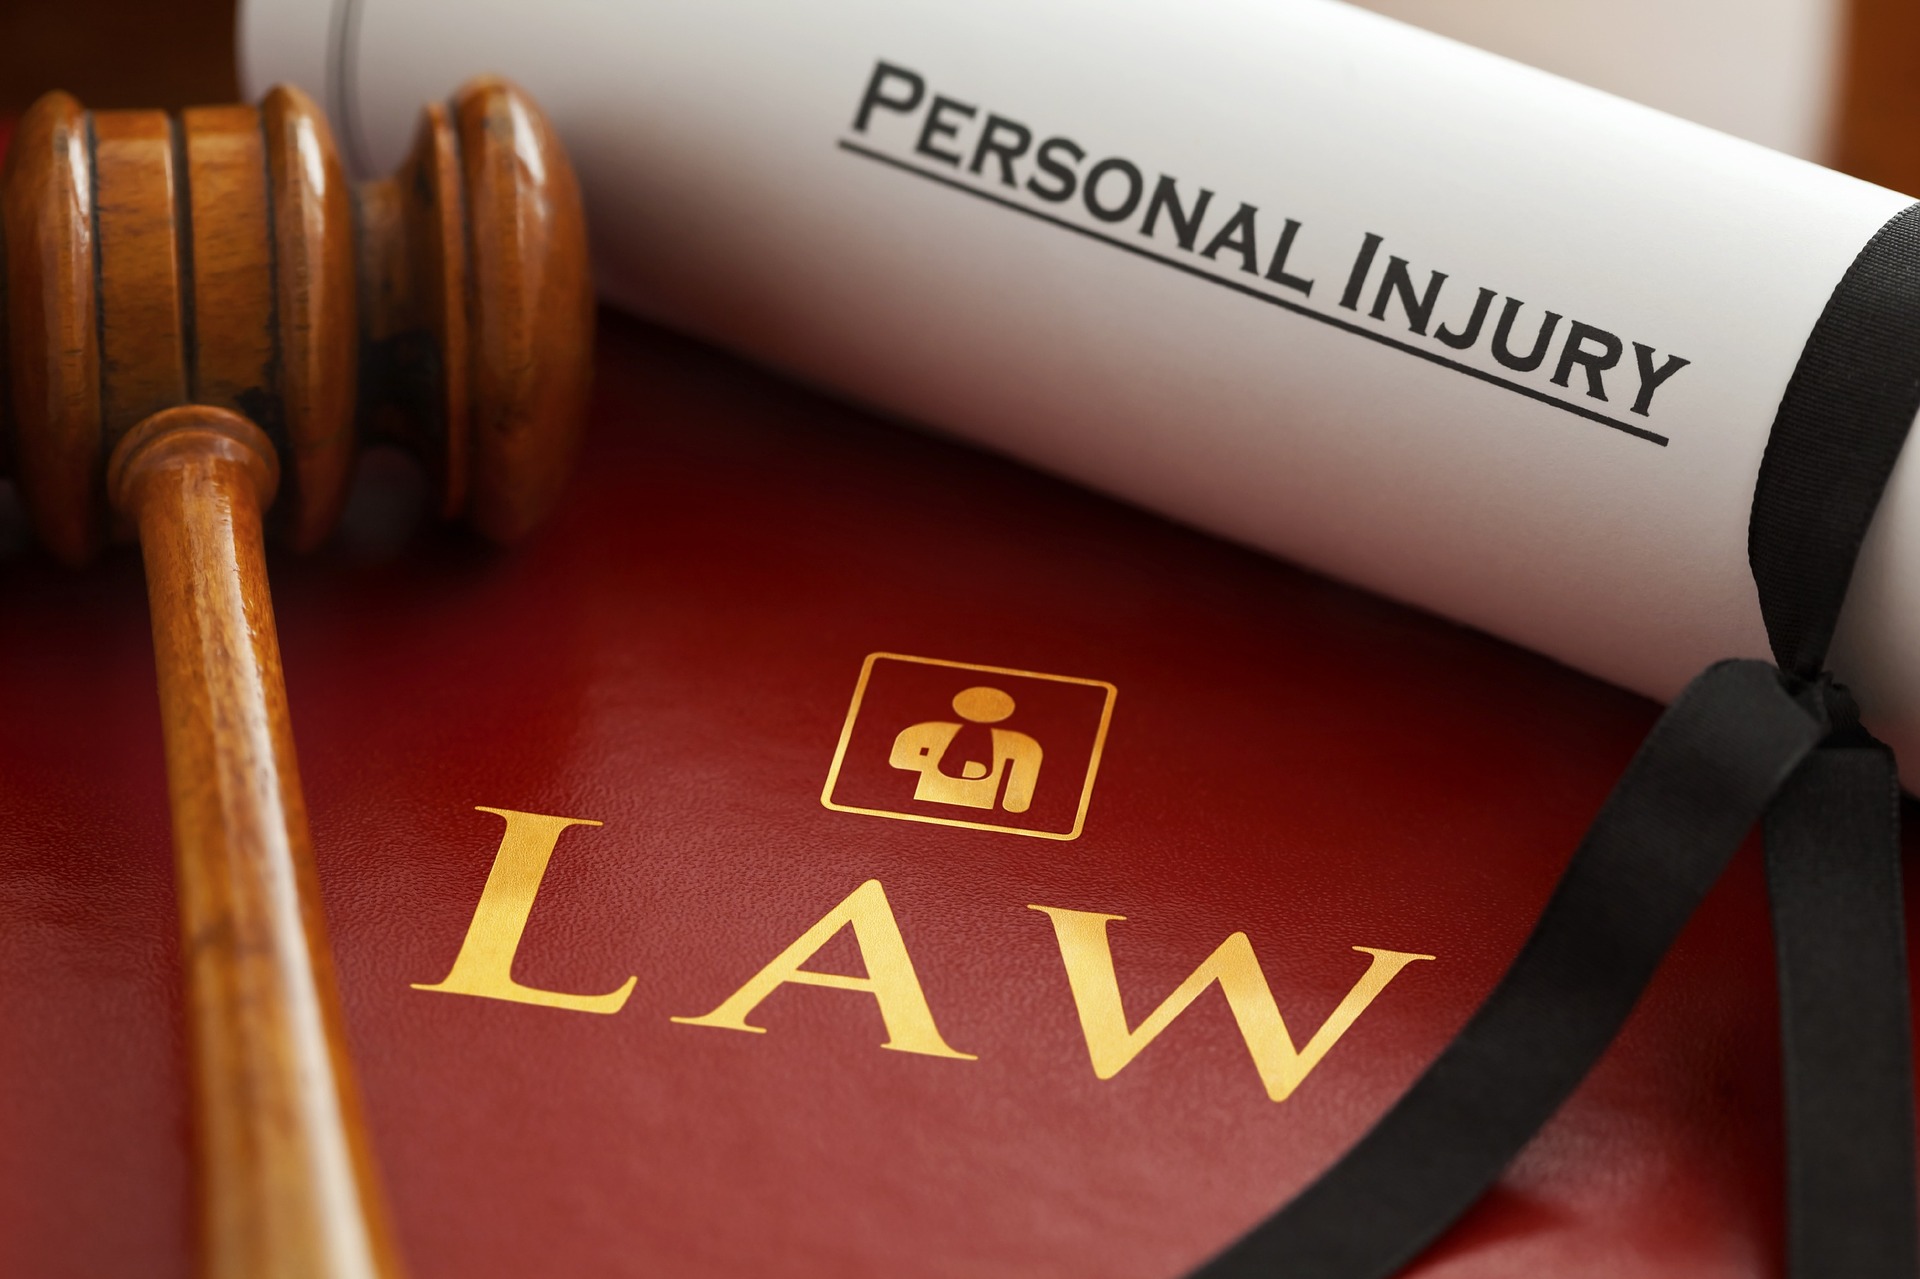 Personal Injury Lawyer - Jesse Davidson, P.A.